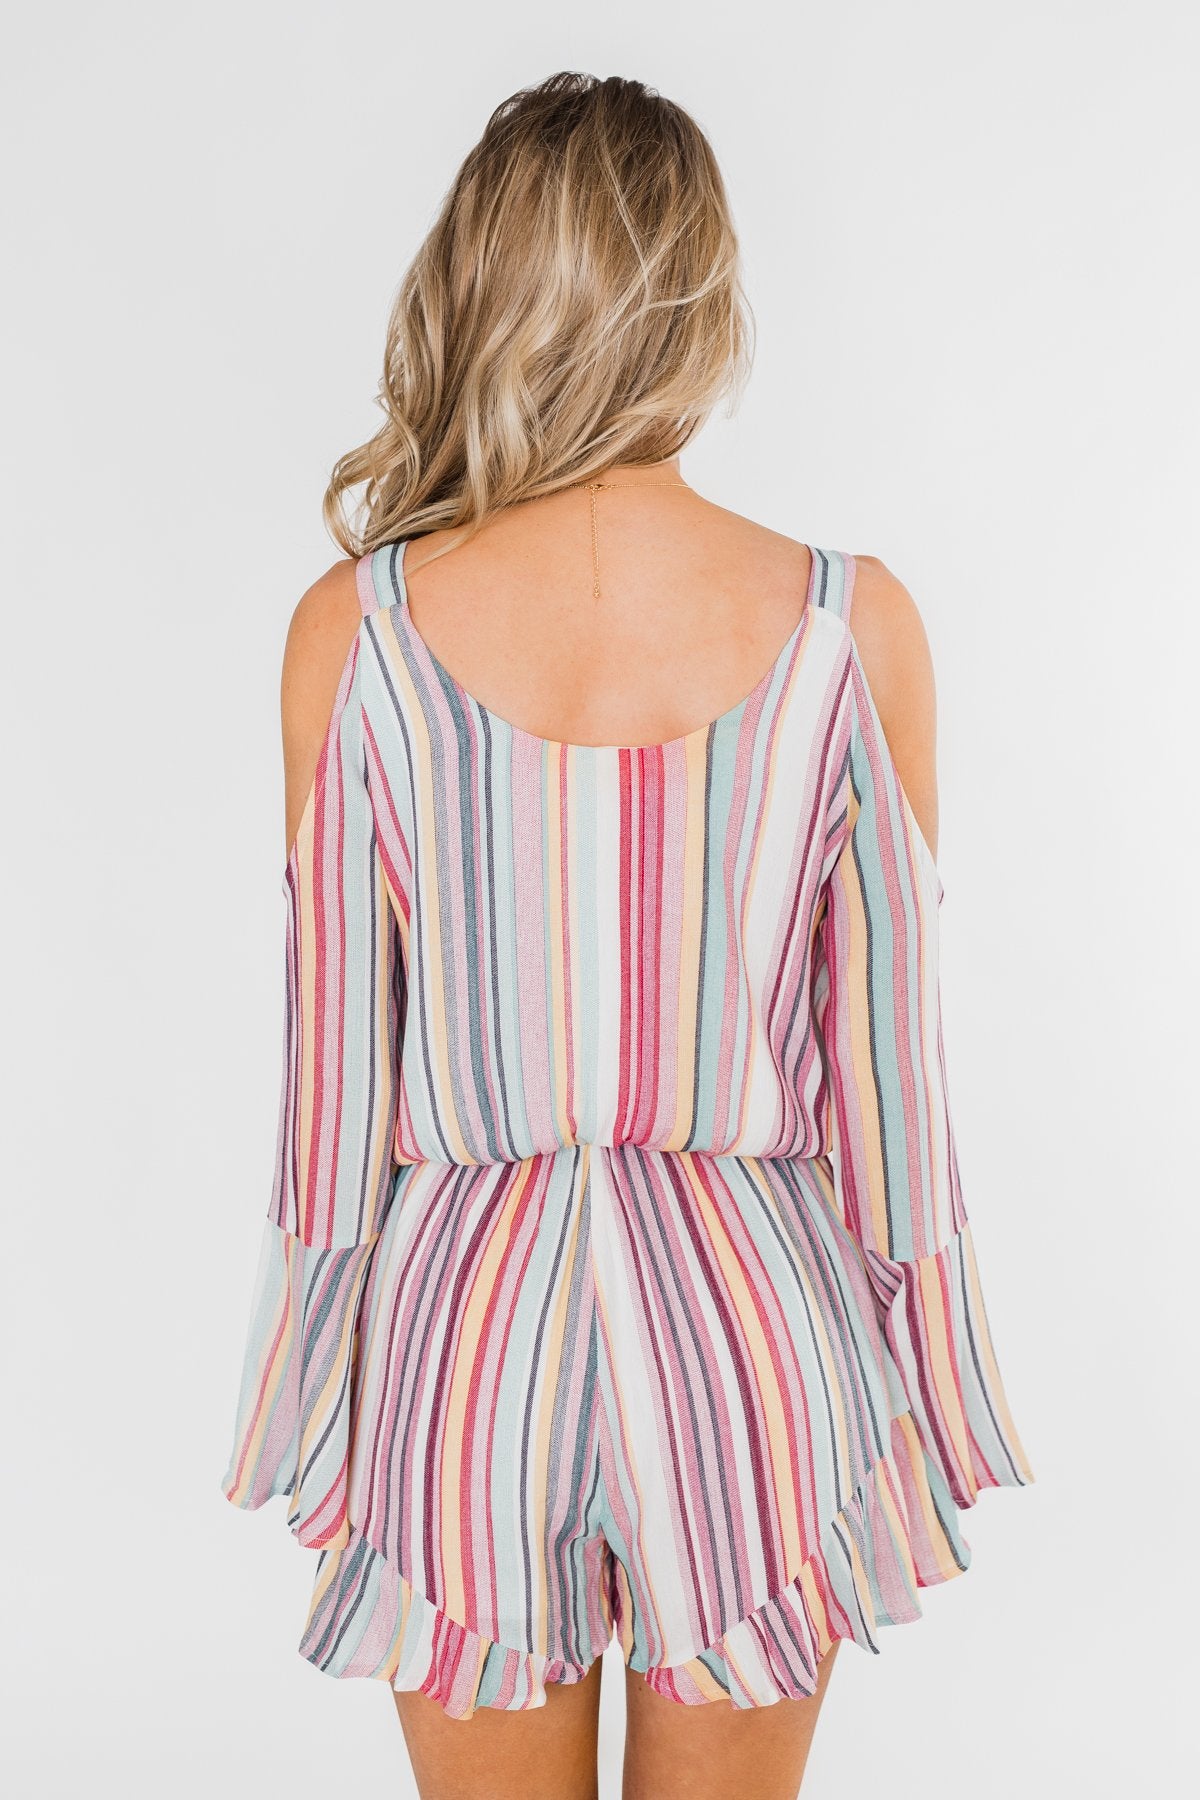 Summer Lovin' Striped Romper- Multi-Colored